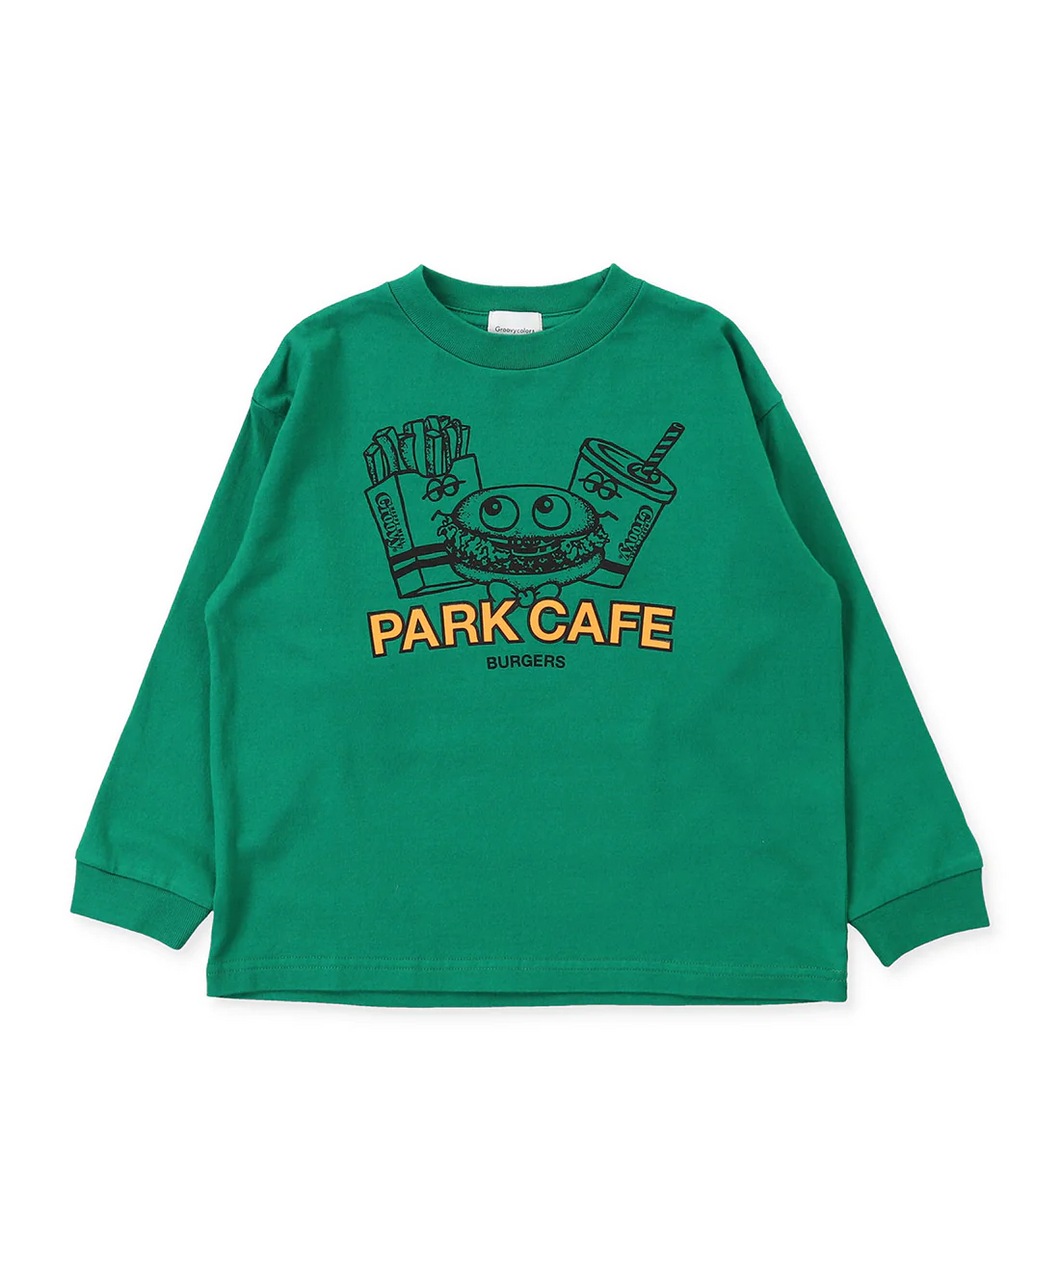 1642414 PARK CAFE BURGERS Long Sleeve Tee-8GN